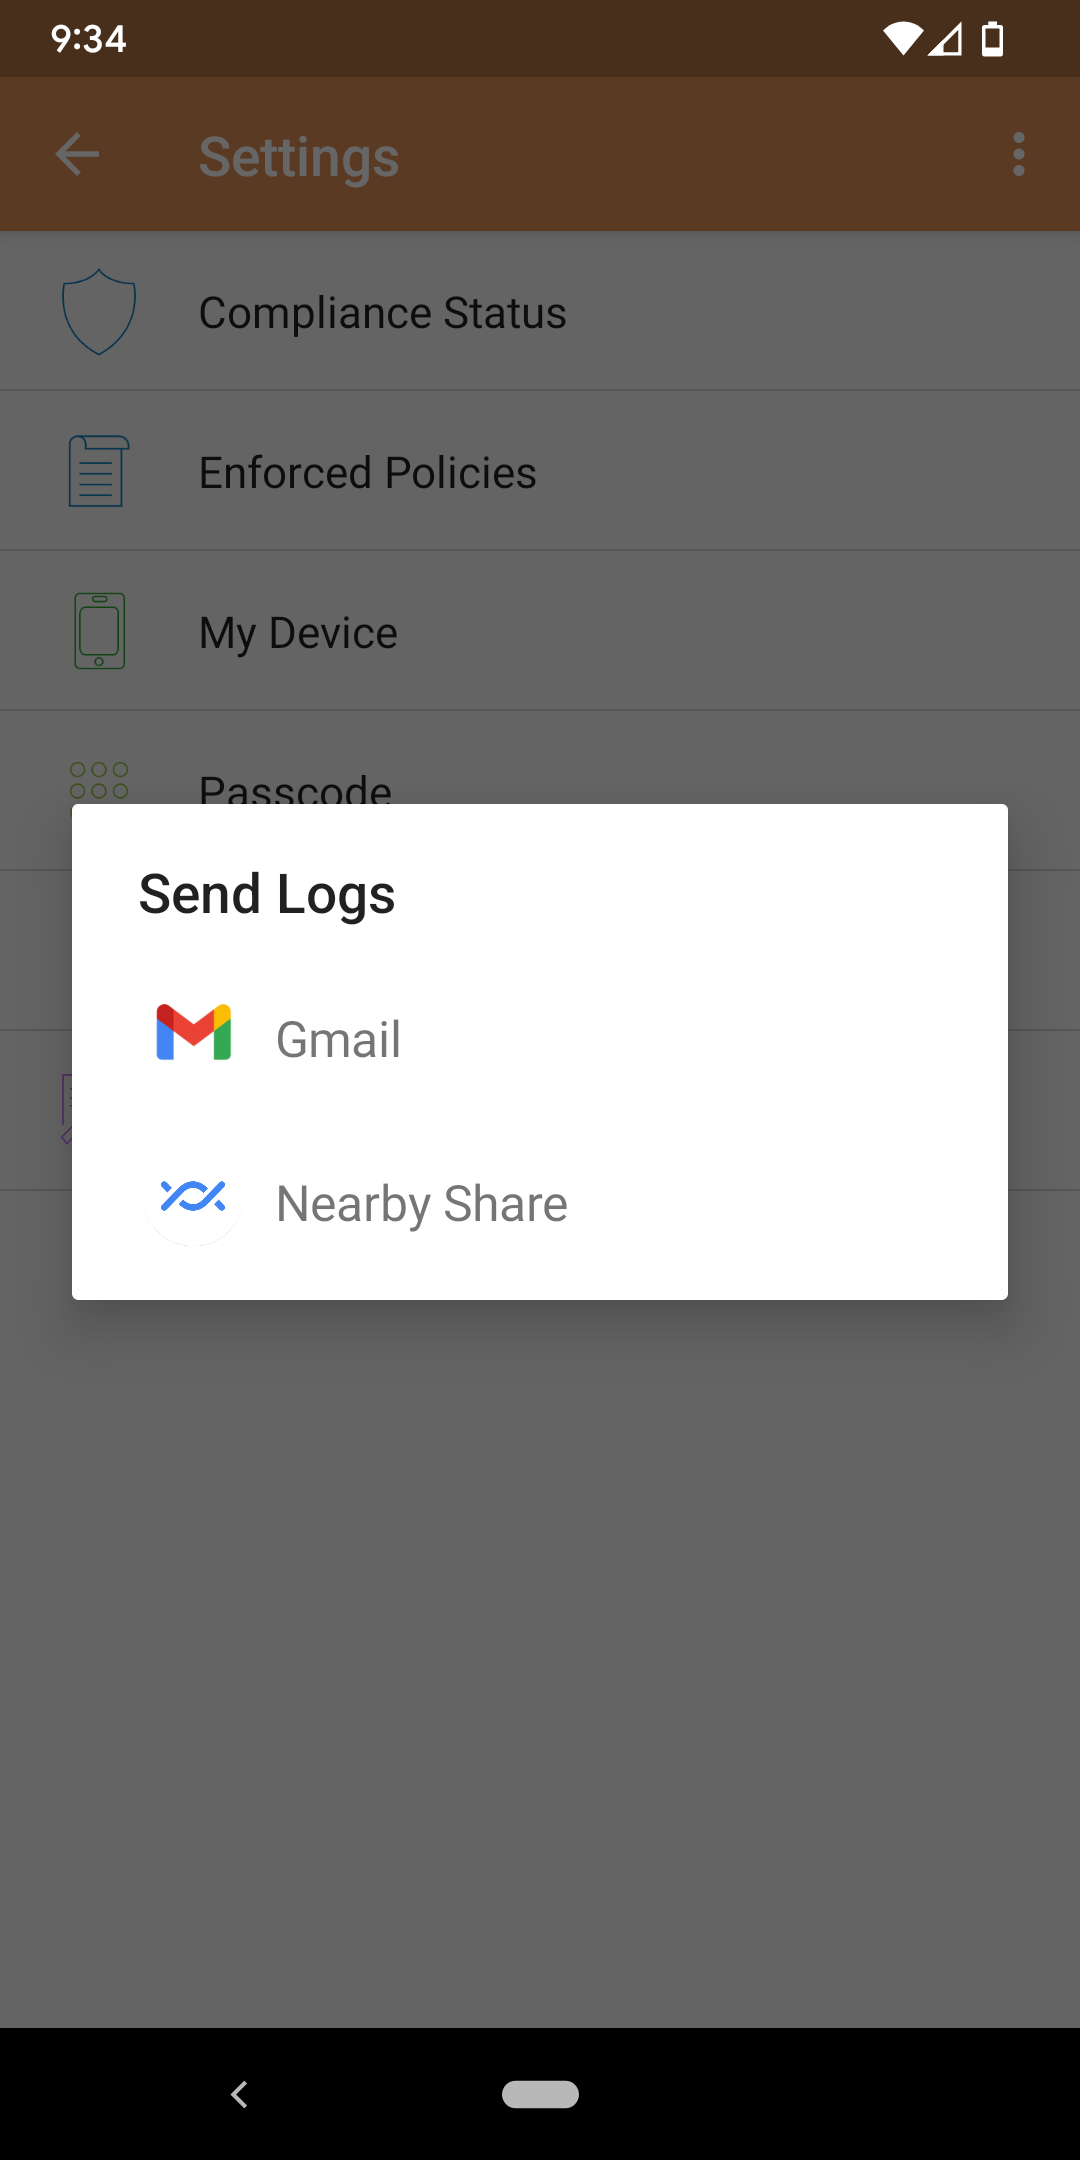 Send Logs dialog box